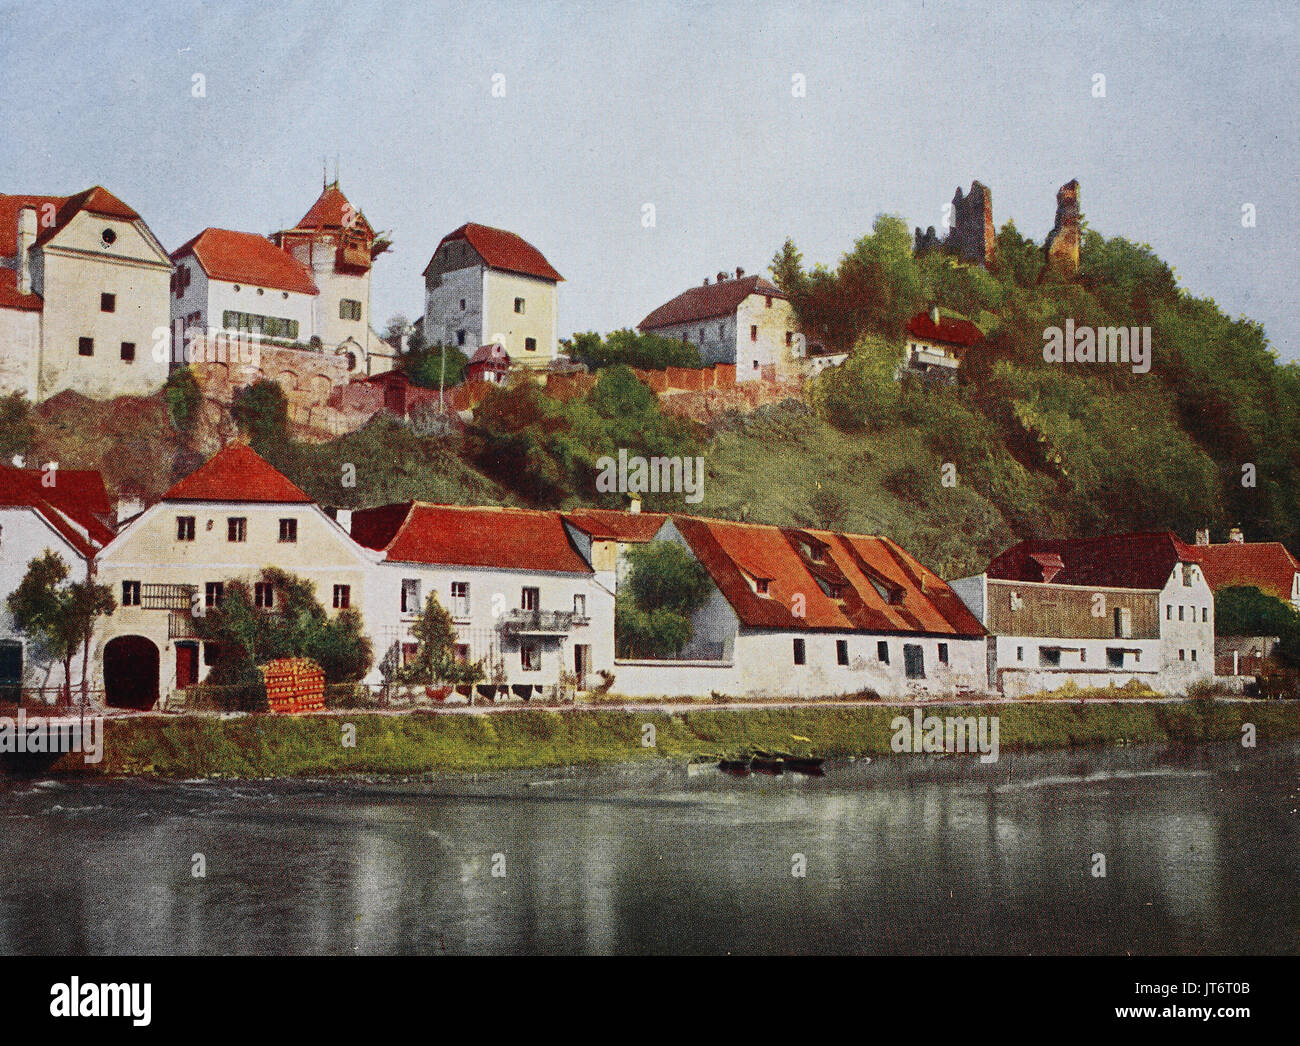 Historisches Foto der Hals in der Nähe von Passau, Bayern, Deutschland,  Digital verbesserte Reproduktion eines Bildes zwischen 1880 - 1885  veröffentlicht Stockfotografie - Alamy